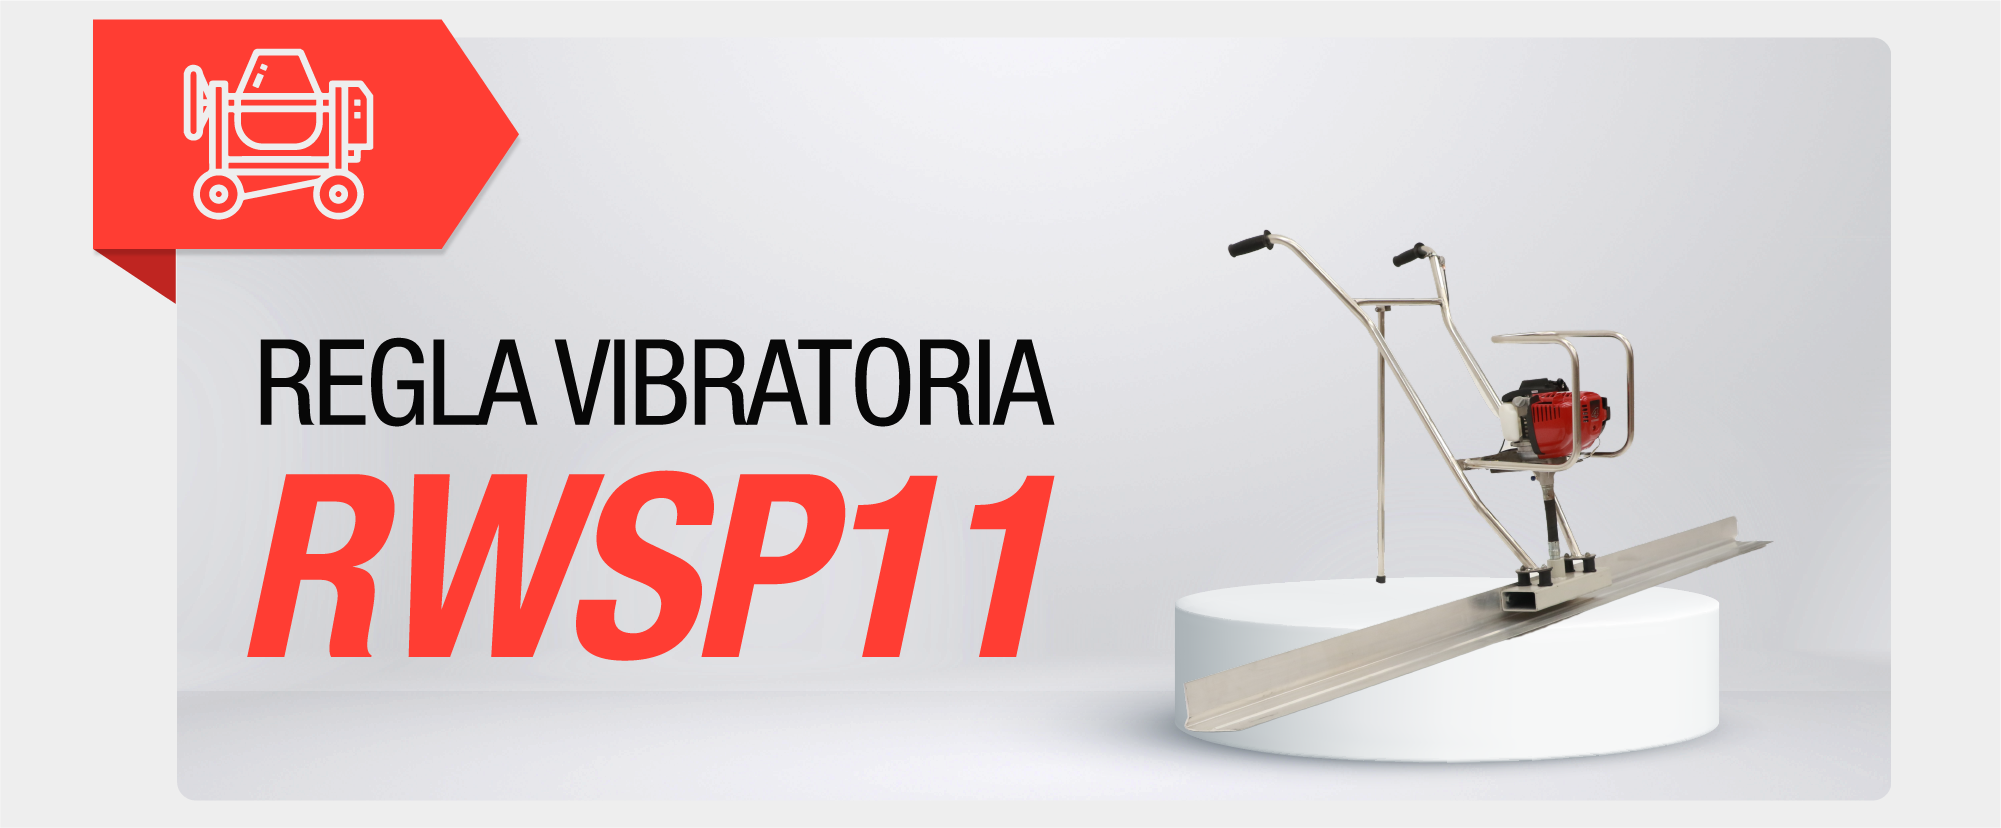 Regla vibratoria RWSP11 CON-013